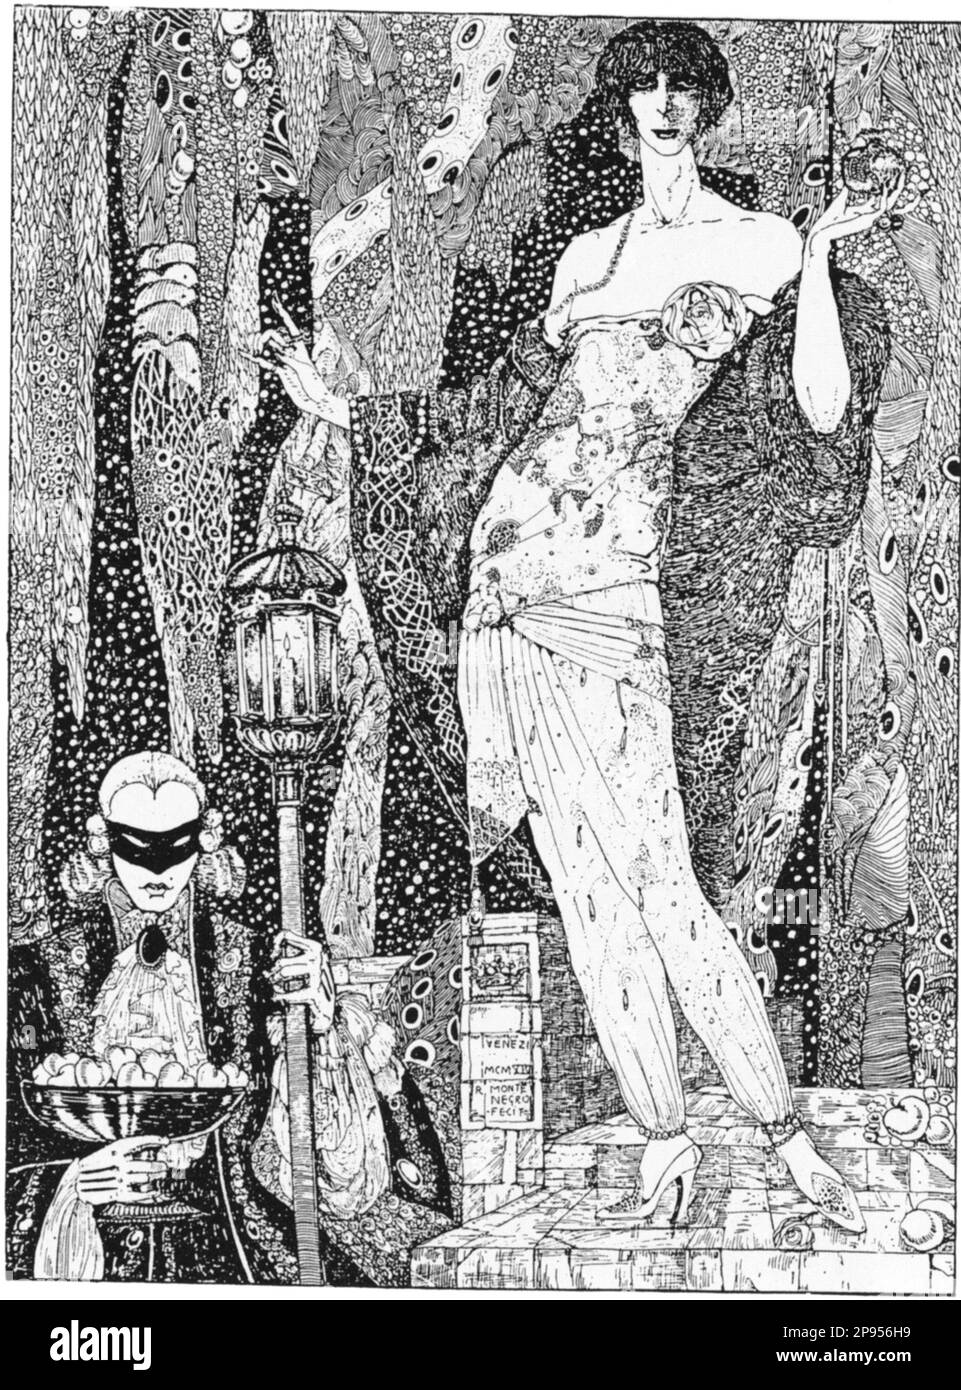 1914 : Ritratto della marchese italiana LUISA CASATI STAMPA di Soncino ( 1881 - 1957 ) nata Contessa AMMAN , una delle più celebri amanti di Gabriele D'Annunzio , Ritratto a Venezia di ROBERTO MONTENEGRO in Paul POIRET vestito da fantasia - nobiltà italiana - nobiltà - FUTURISMO - FUTURISMO - Muse - Musa - ARTE - ARTE - Ritratto - Ritratto - Venezia - MARCHESA - BELLE EPOQUE ---- Archivio GBB Foto Stock